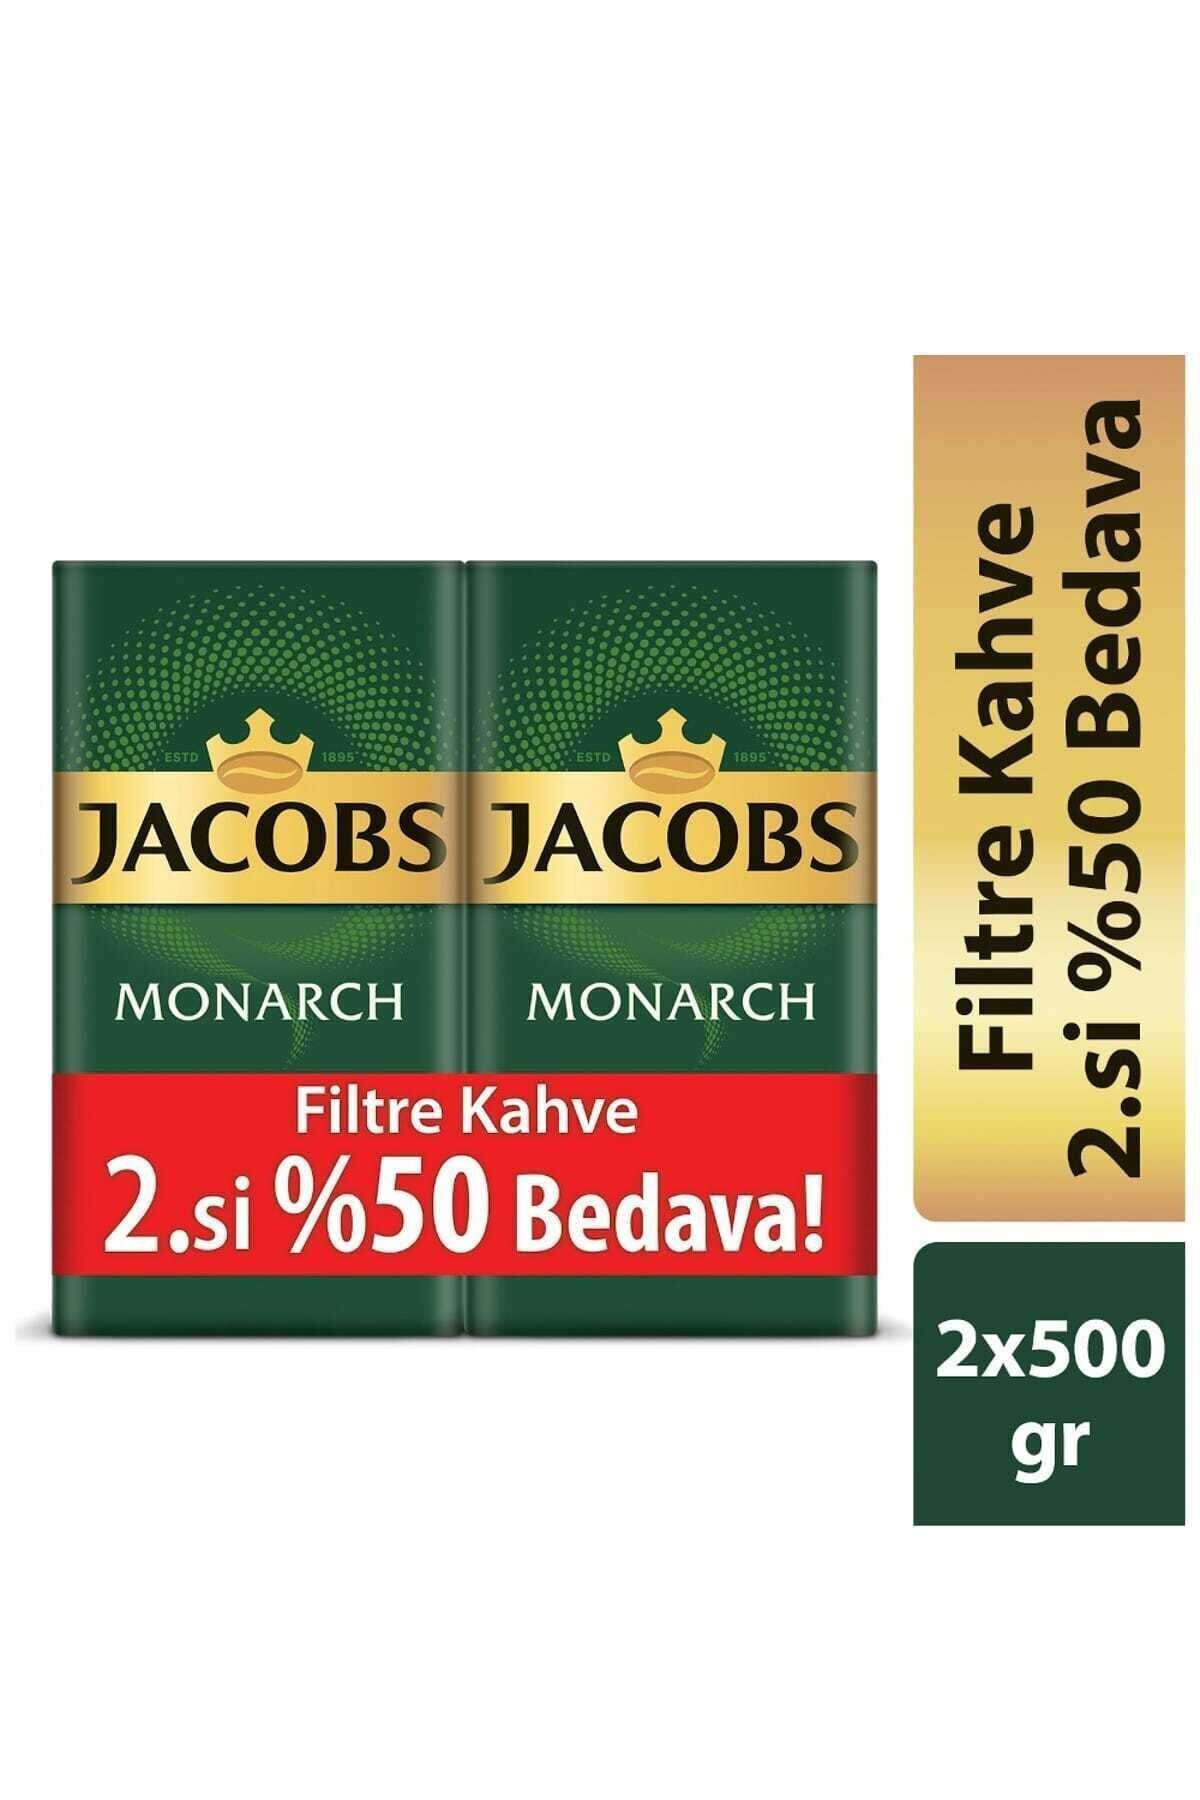 Jacobs Monarch Filtre Kahve 2 X 500 gr